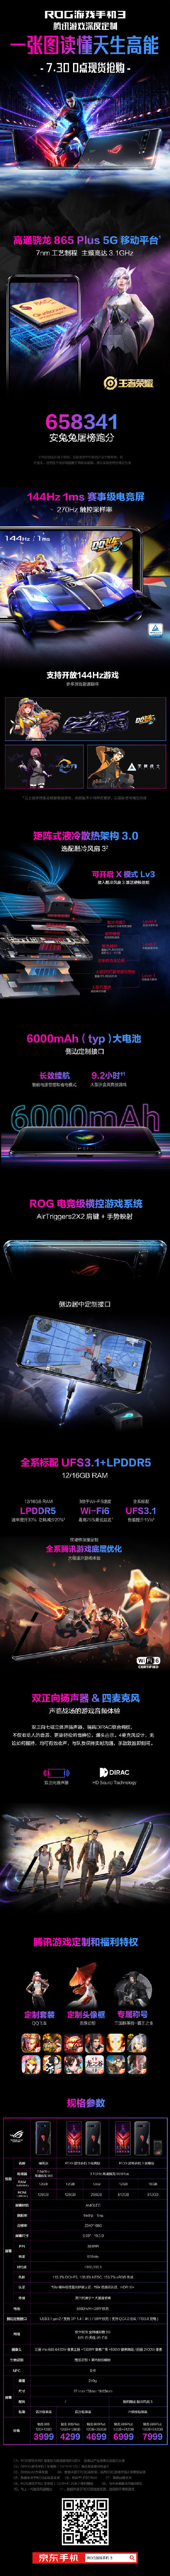 一图看懂ROG游戏手机3腾讯游戏深度定制起价3999元。  第2张